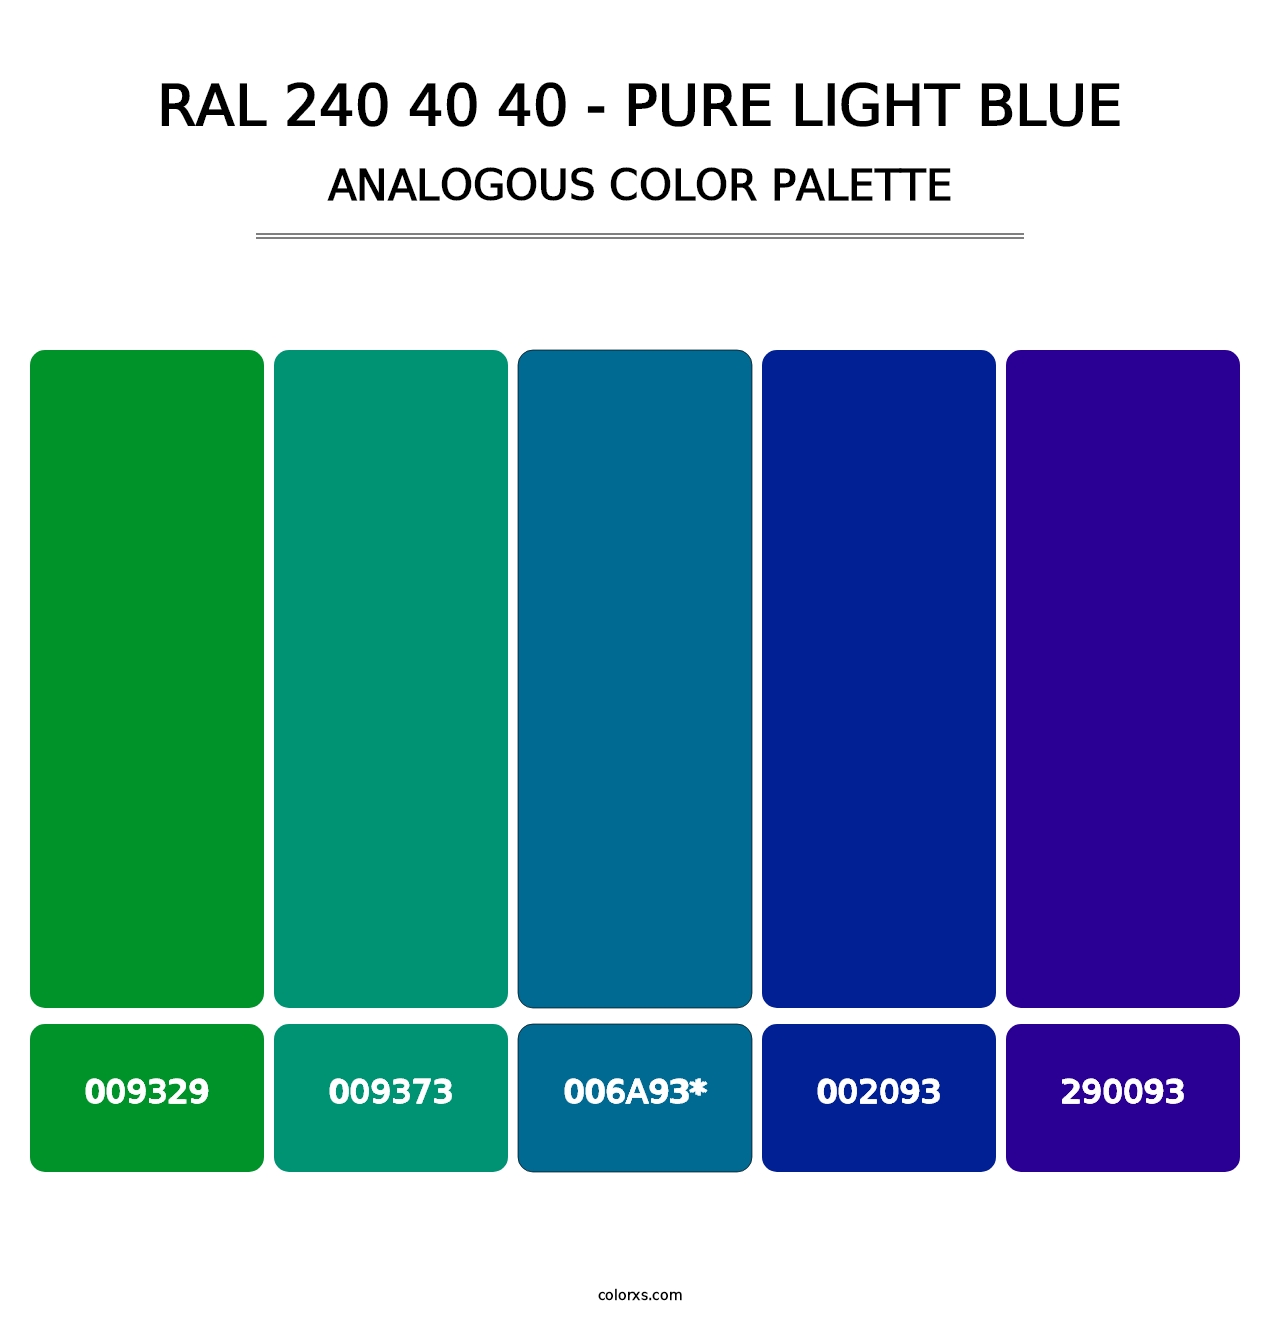 RAL 240 40 40 - Pure Light Blue - Analogous Color Palette